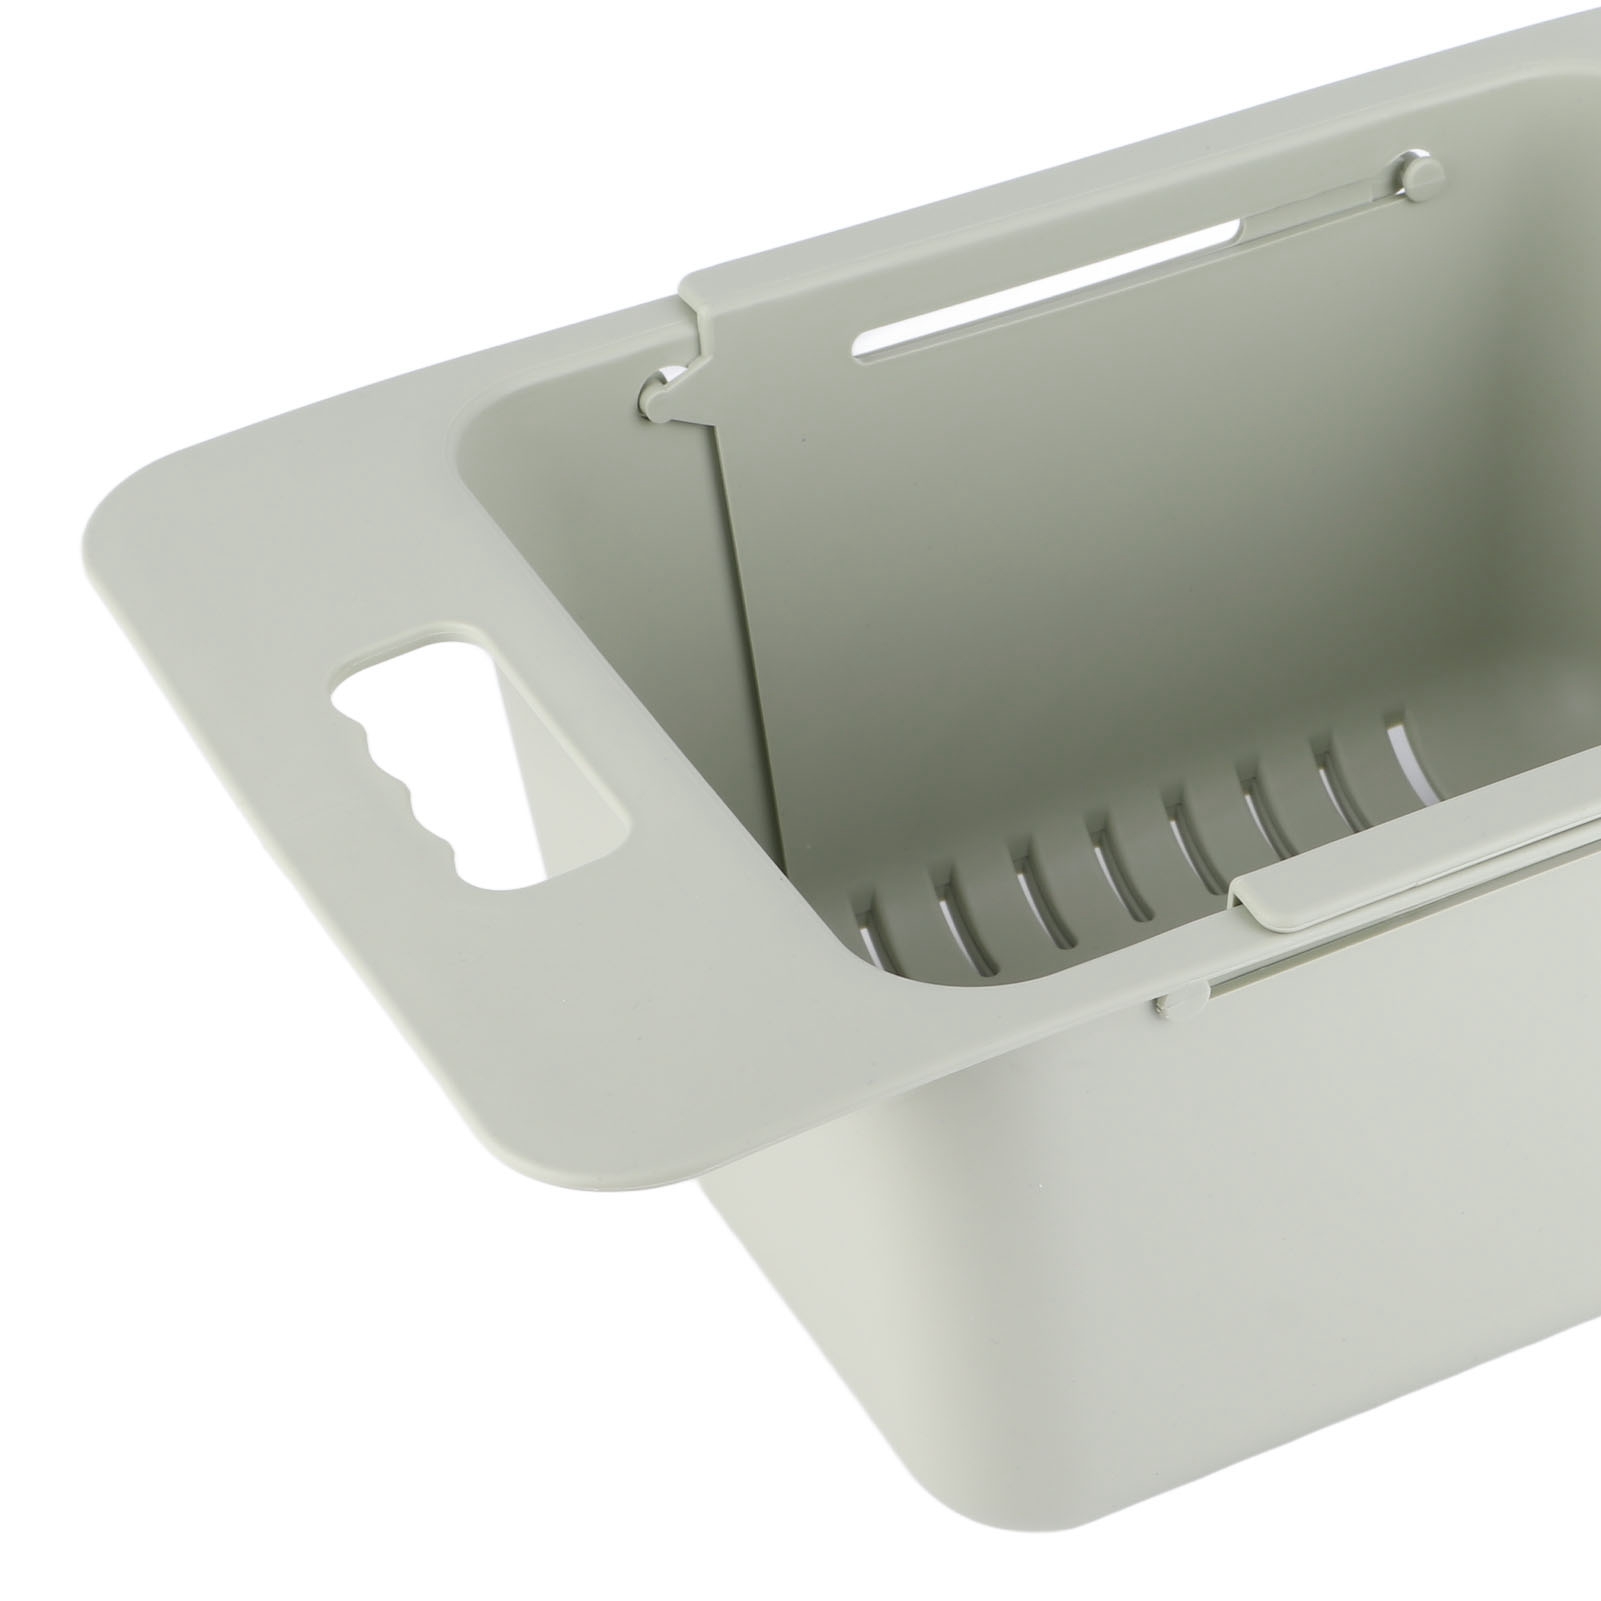 Chest Freezer Basket Deep Adjustable Storage Organizer for Kitchen